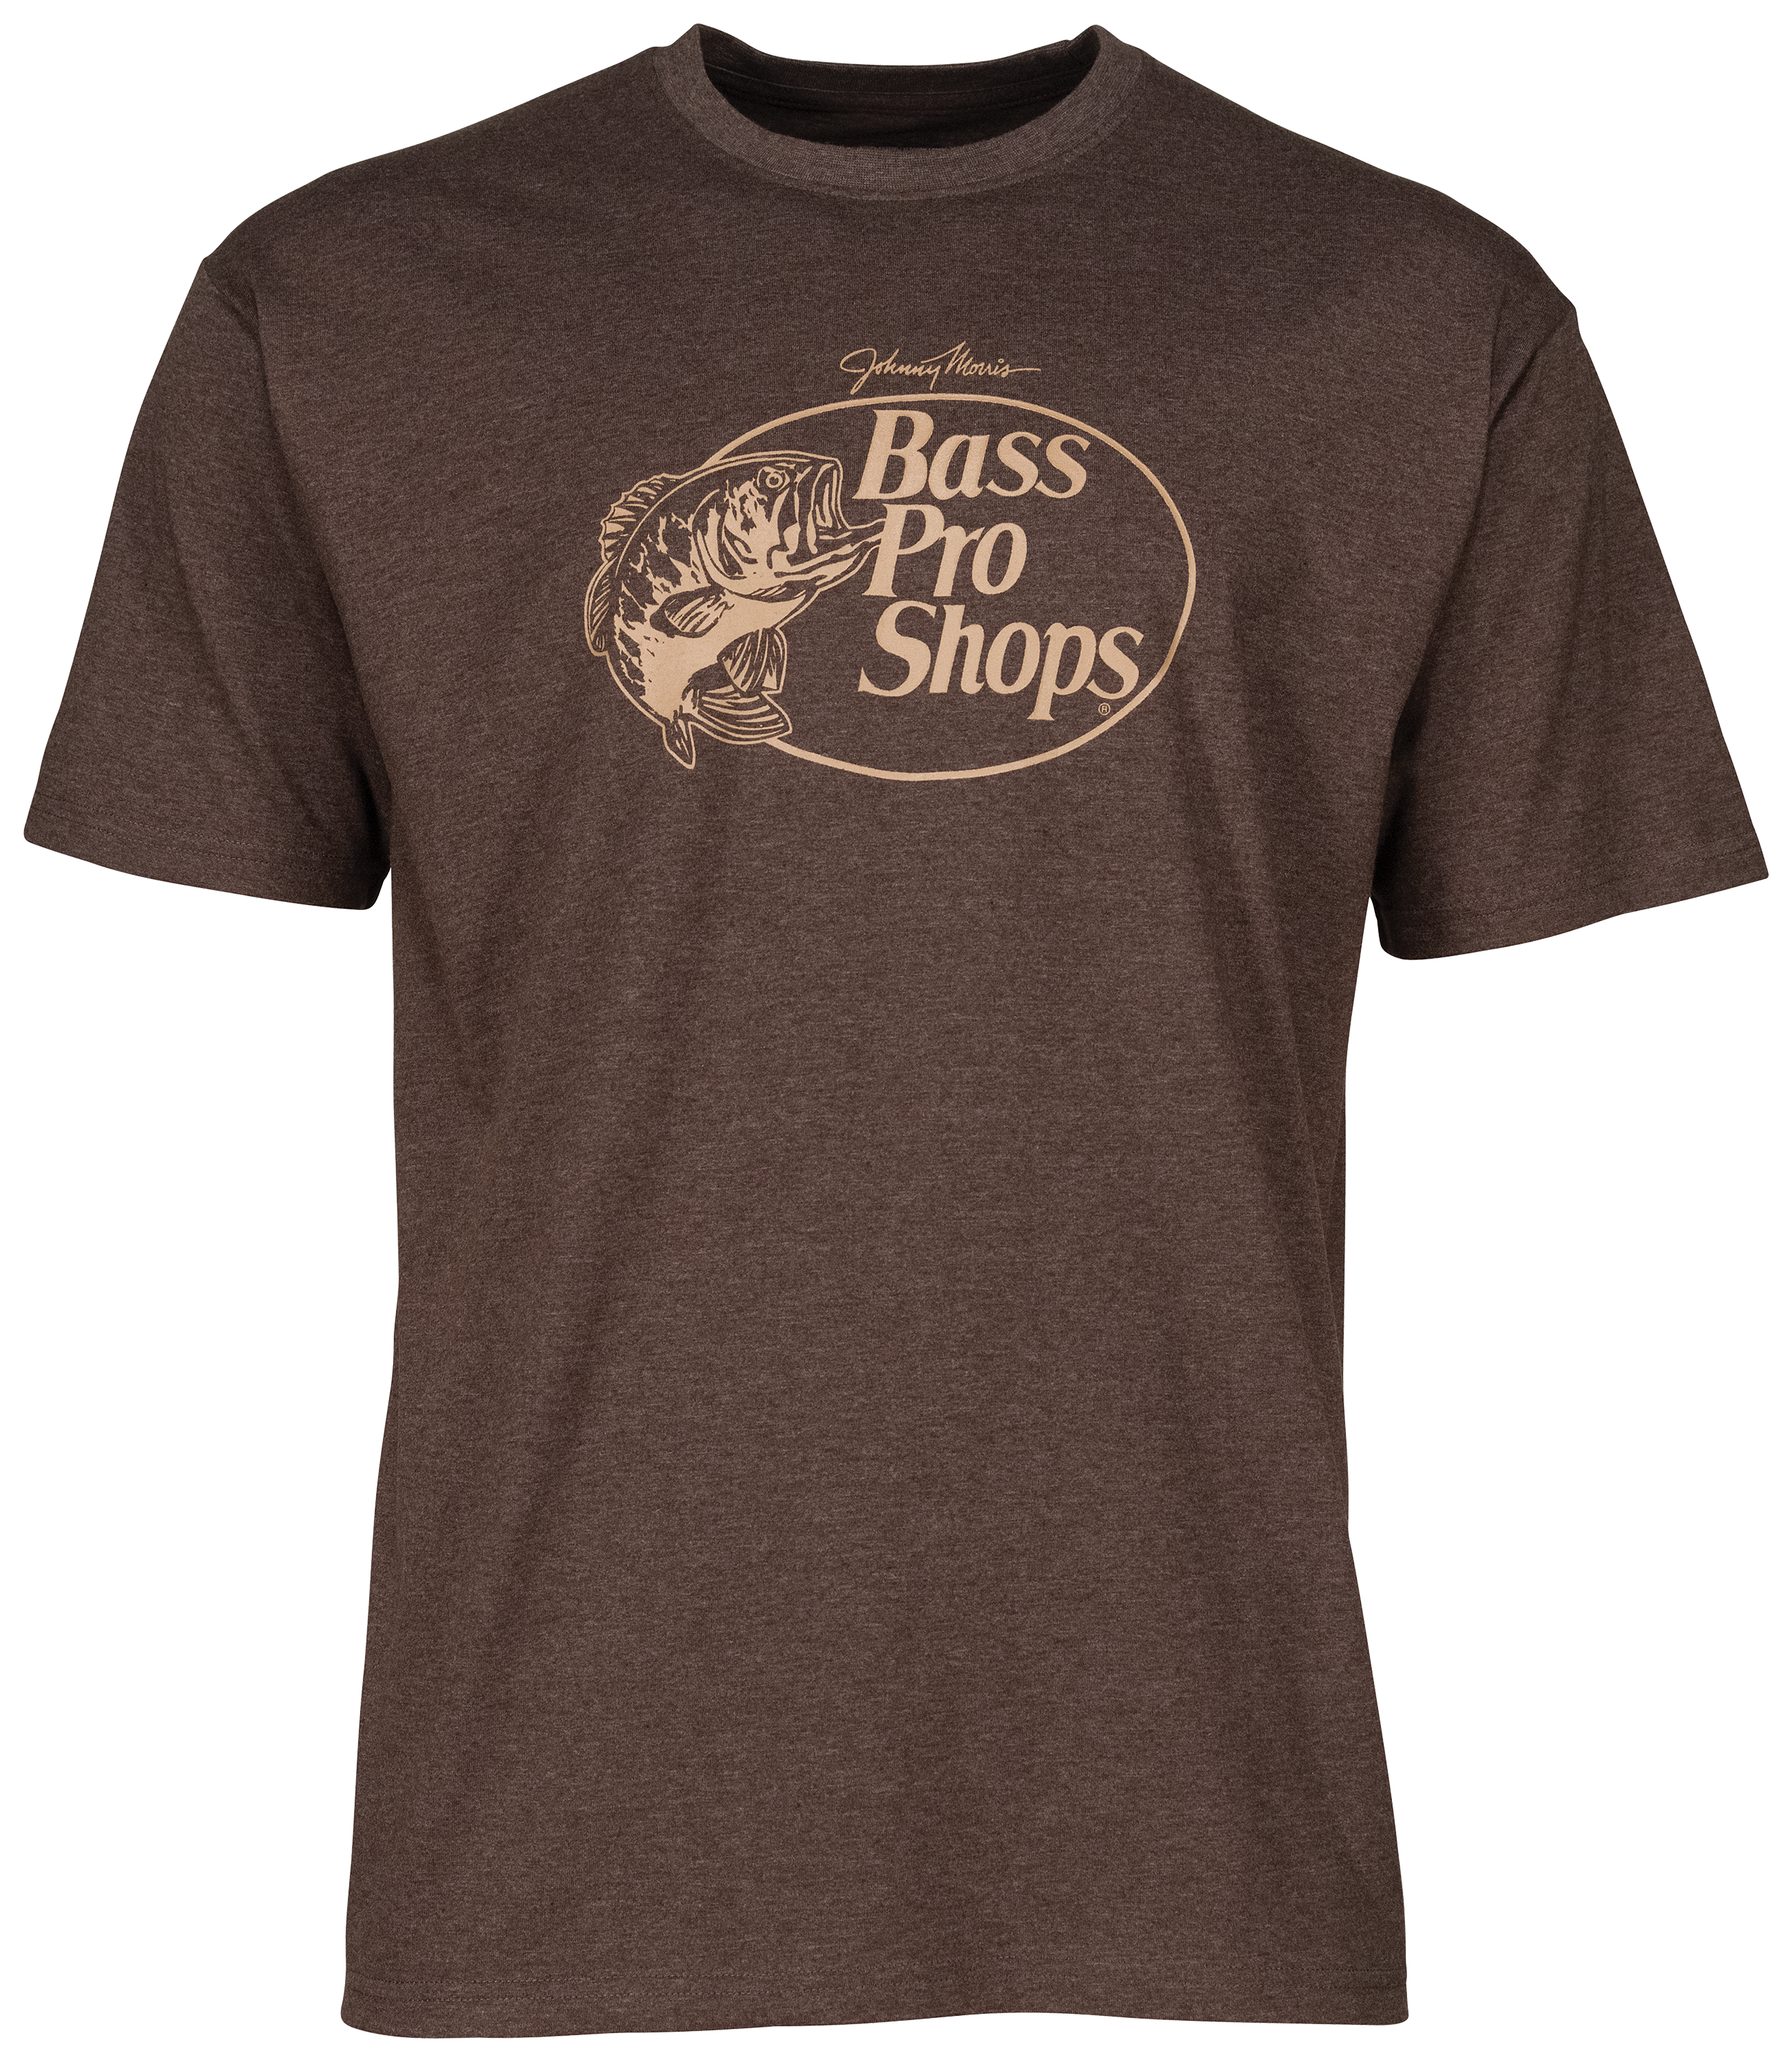 Bass Pro Shops Original Logo 2.0 Short-Sleeve T-Shirt for Men - Heather Brown - M